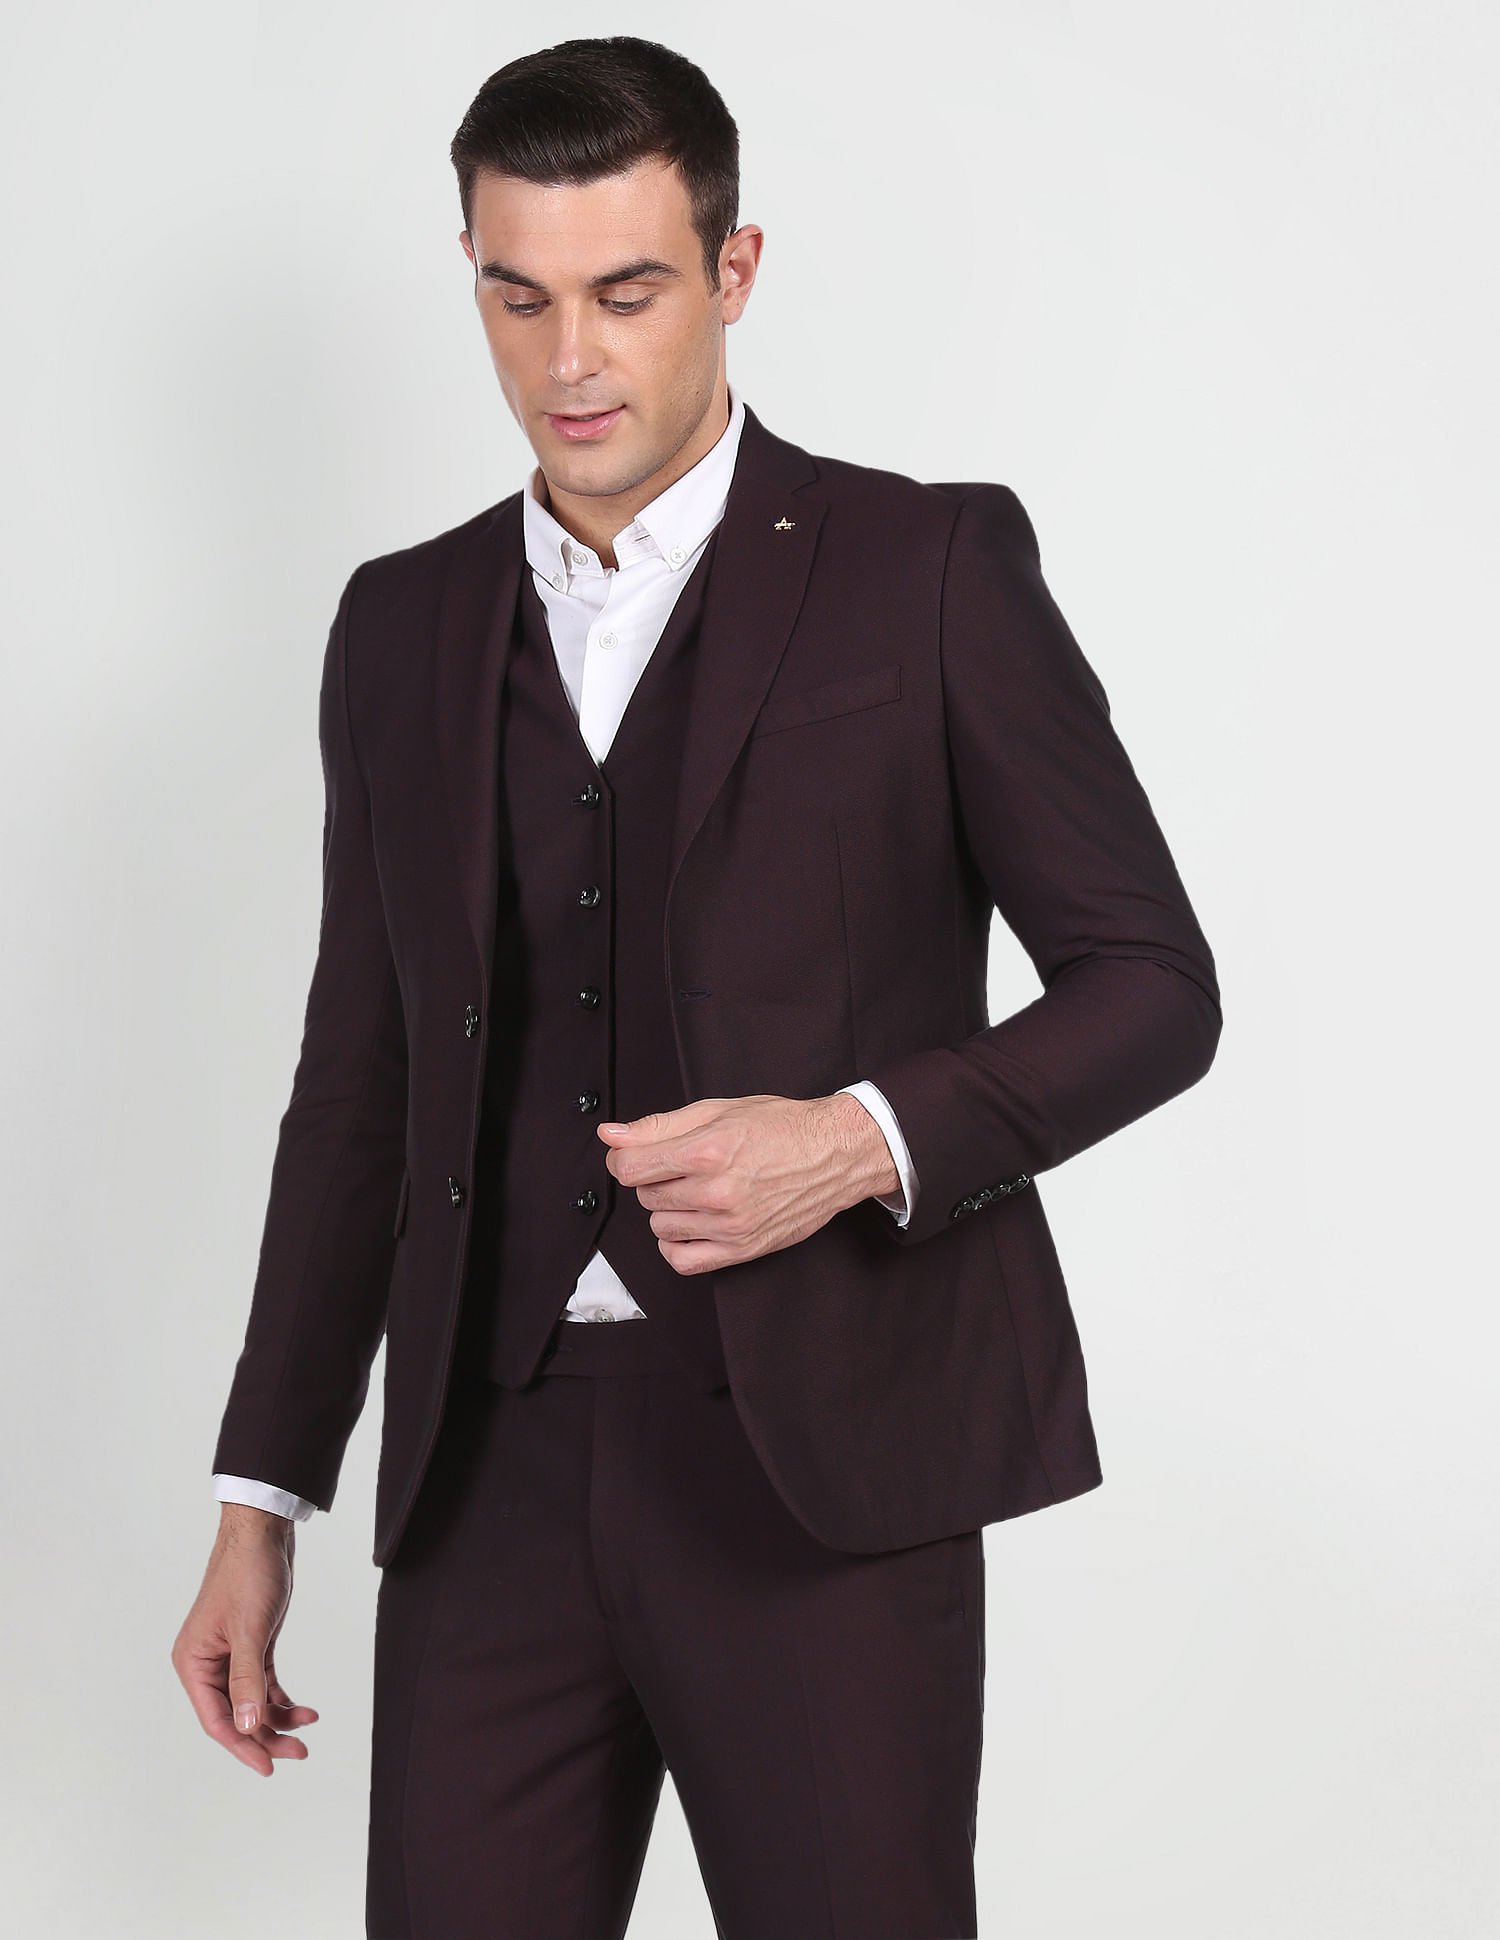 5 Best Suit For Men दूल्हे हो या यार-दोस्त ये मेंस सूट आपको देंगे स्मार्ट  लुक डिज़ाइन देख नहीं पाएंगे रोक - 5 Best Suit For Men: दूल्हे हो या  यार-दोस्त, ये